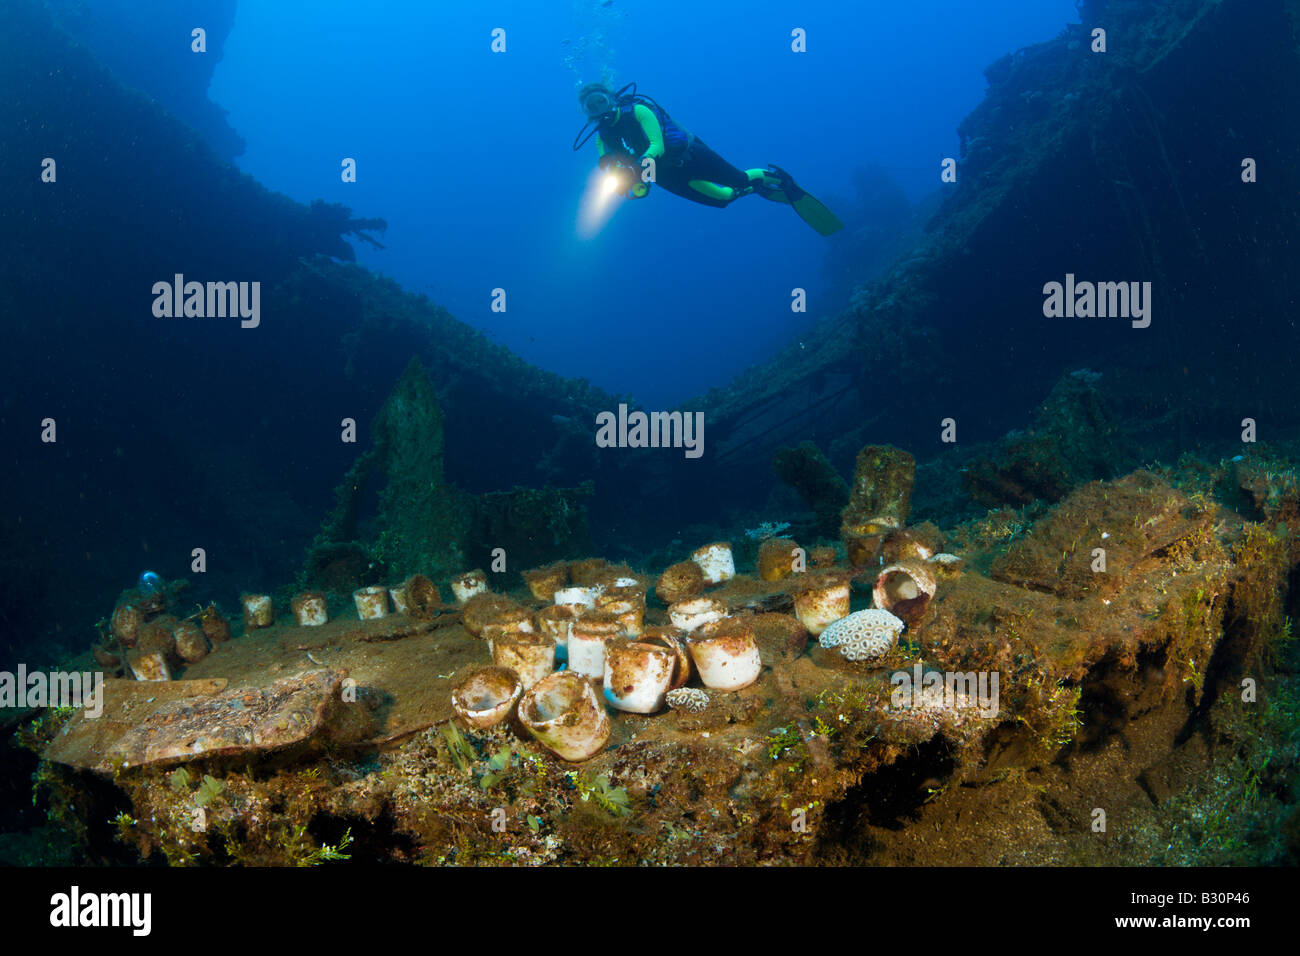 Découvrez la table et plongeur ARTEFACTS SUR LE USS Saratoga atoll de Bikini des Îles Marshall Micronésie Océan Pacifique Banque D'Images